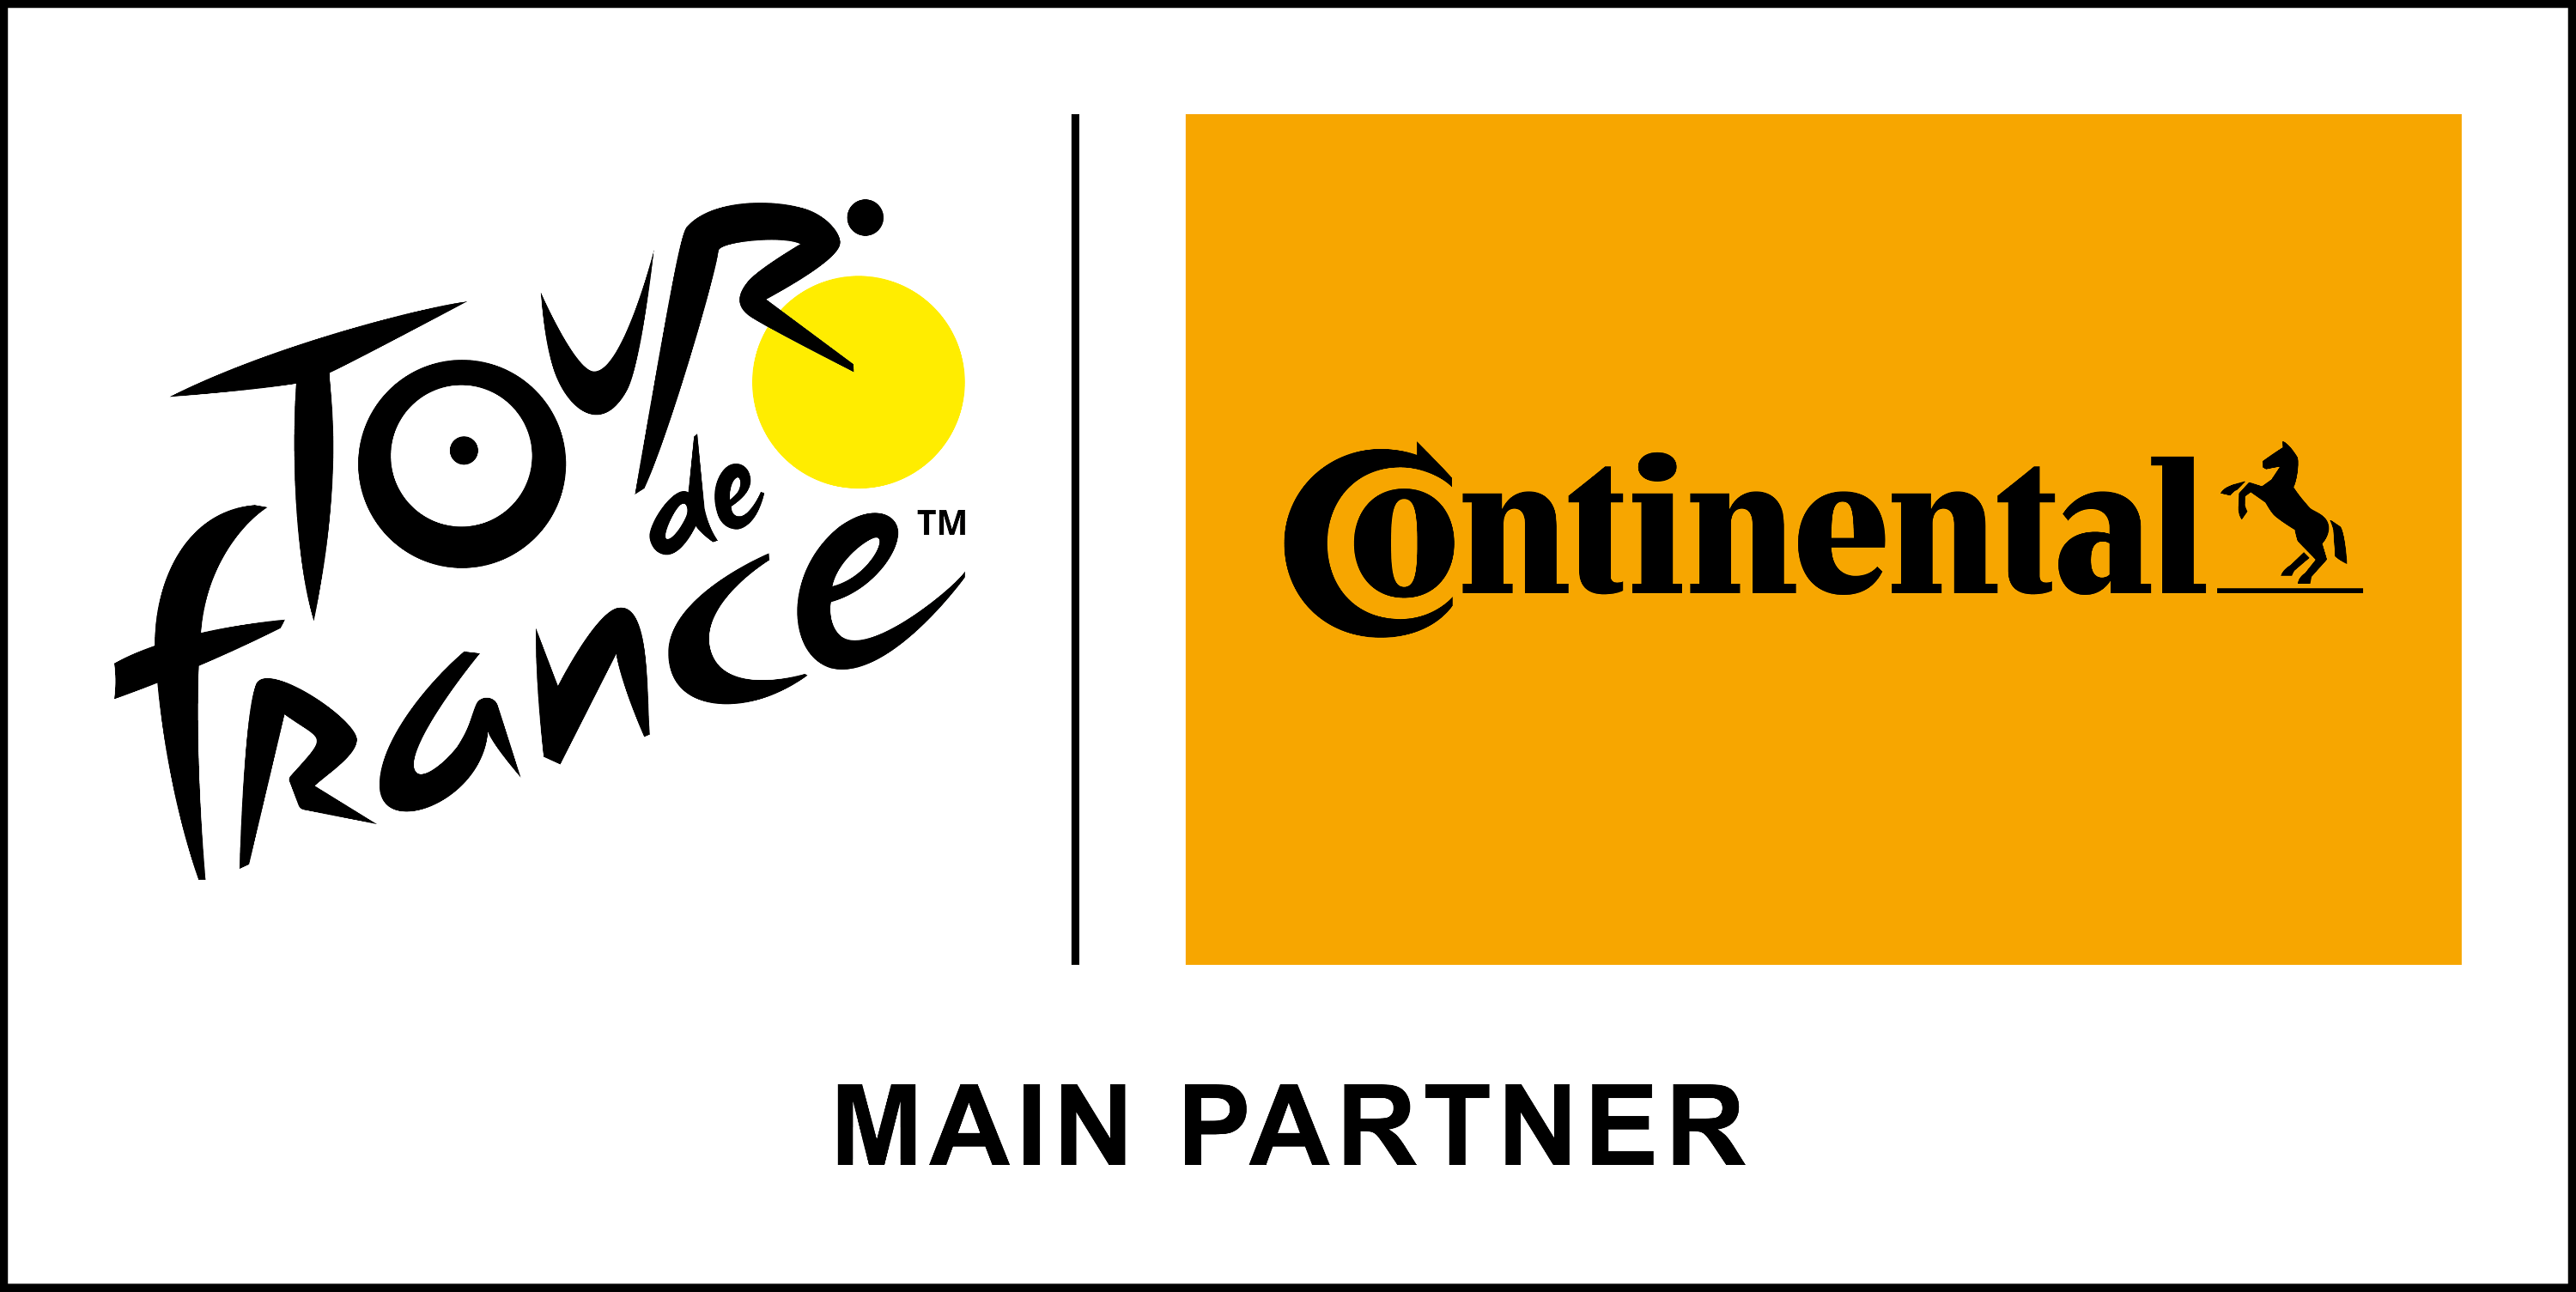 Continental & Tour de France